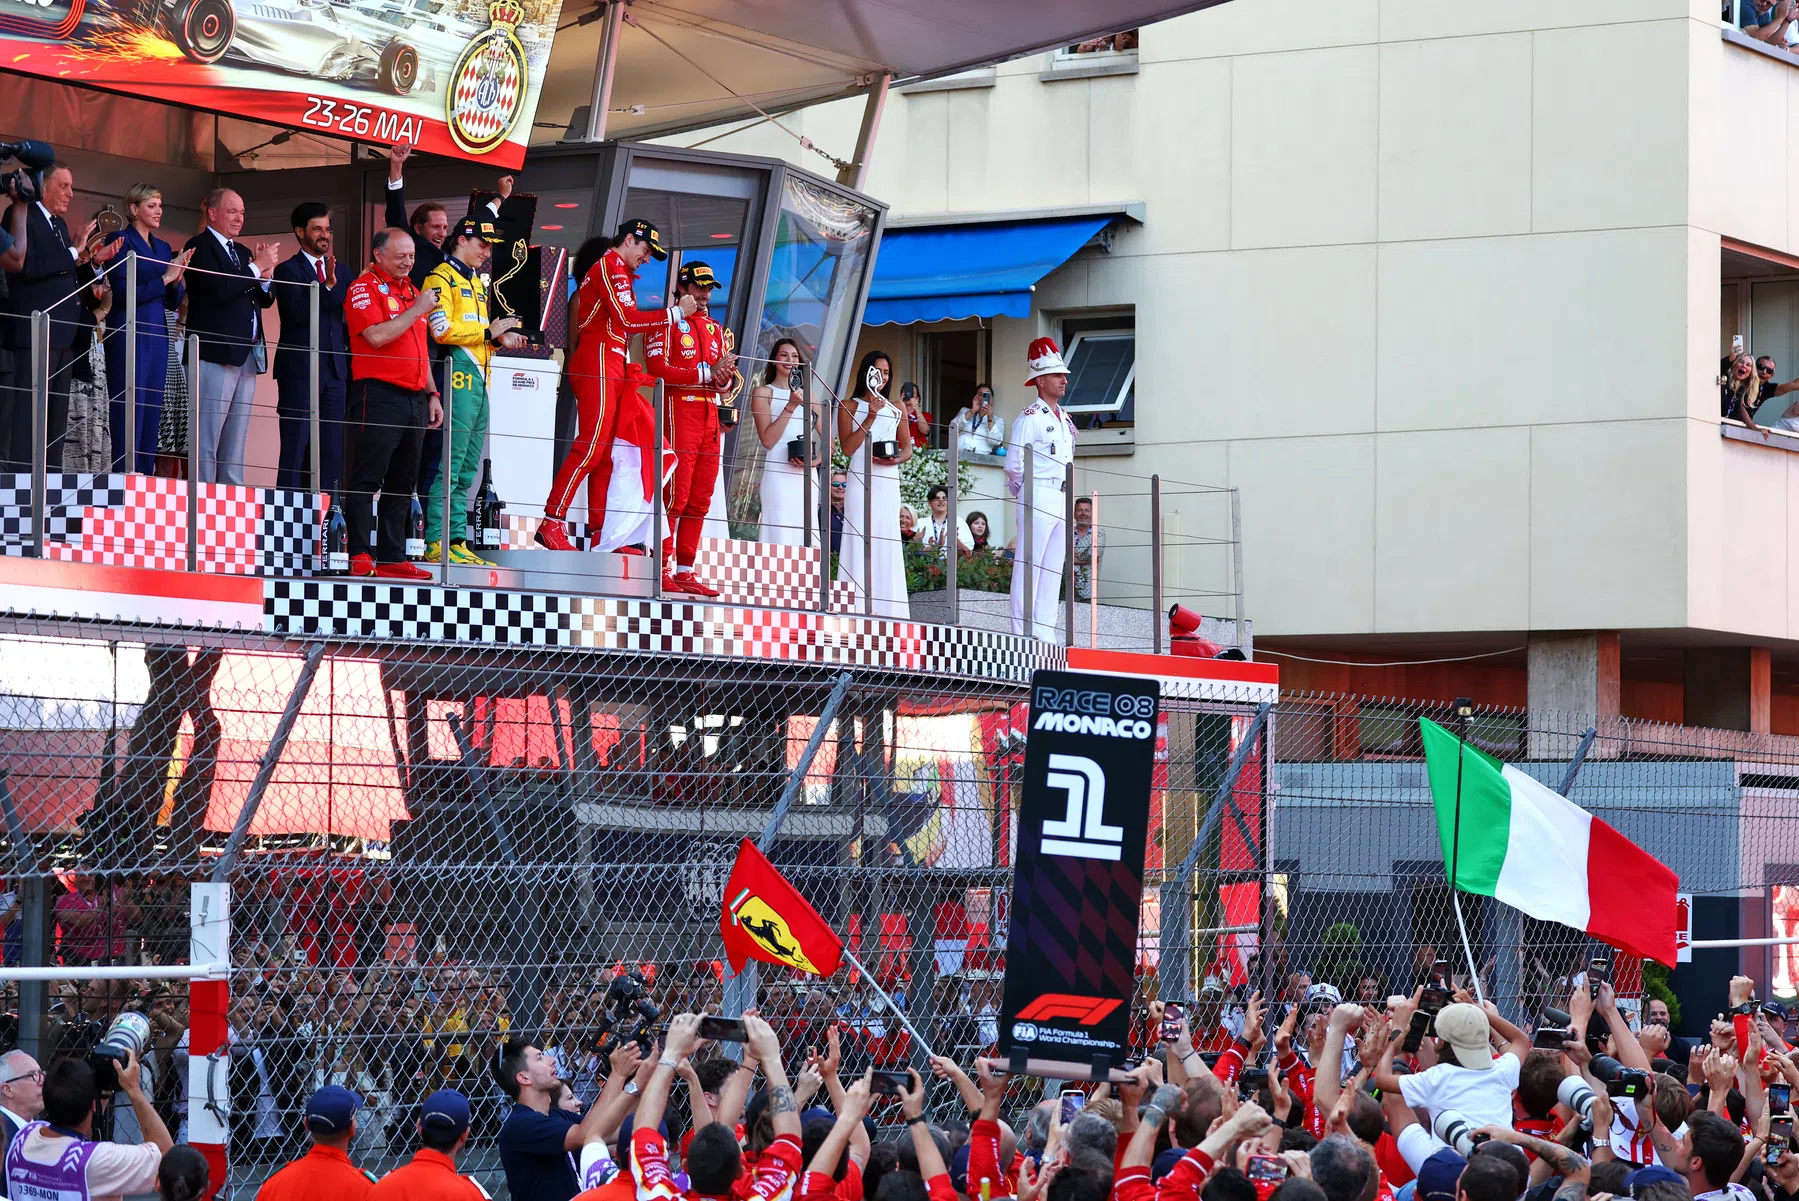 Le Grand Prix de Monaco attire un nombre record de téléspectateurs américains